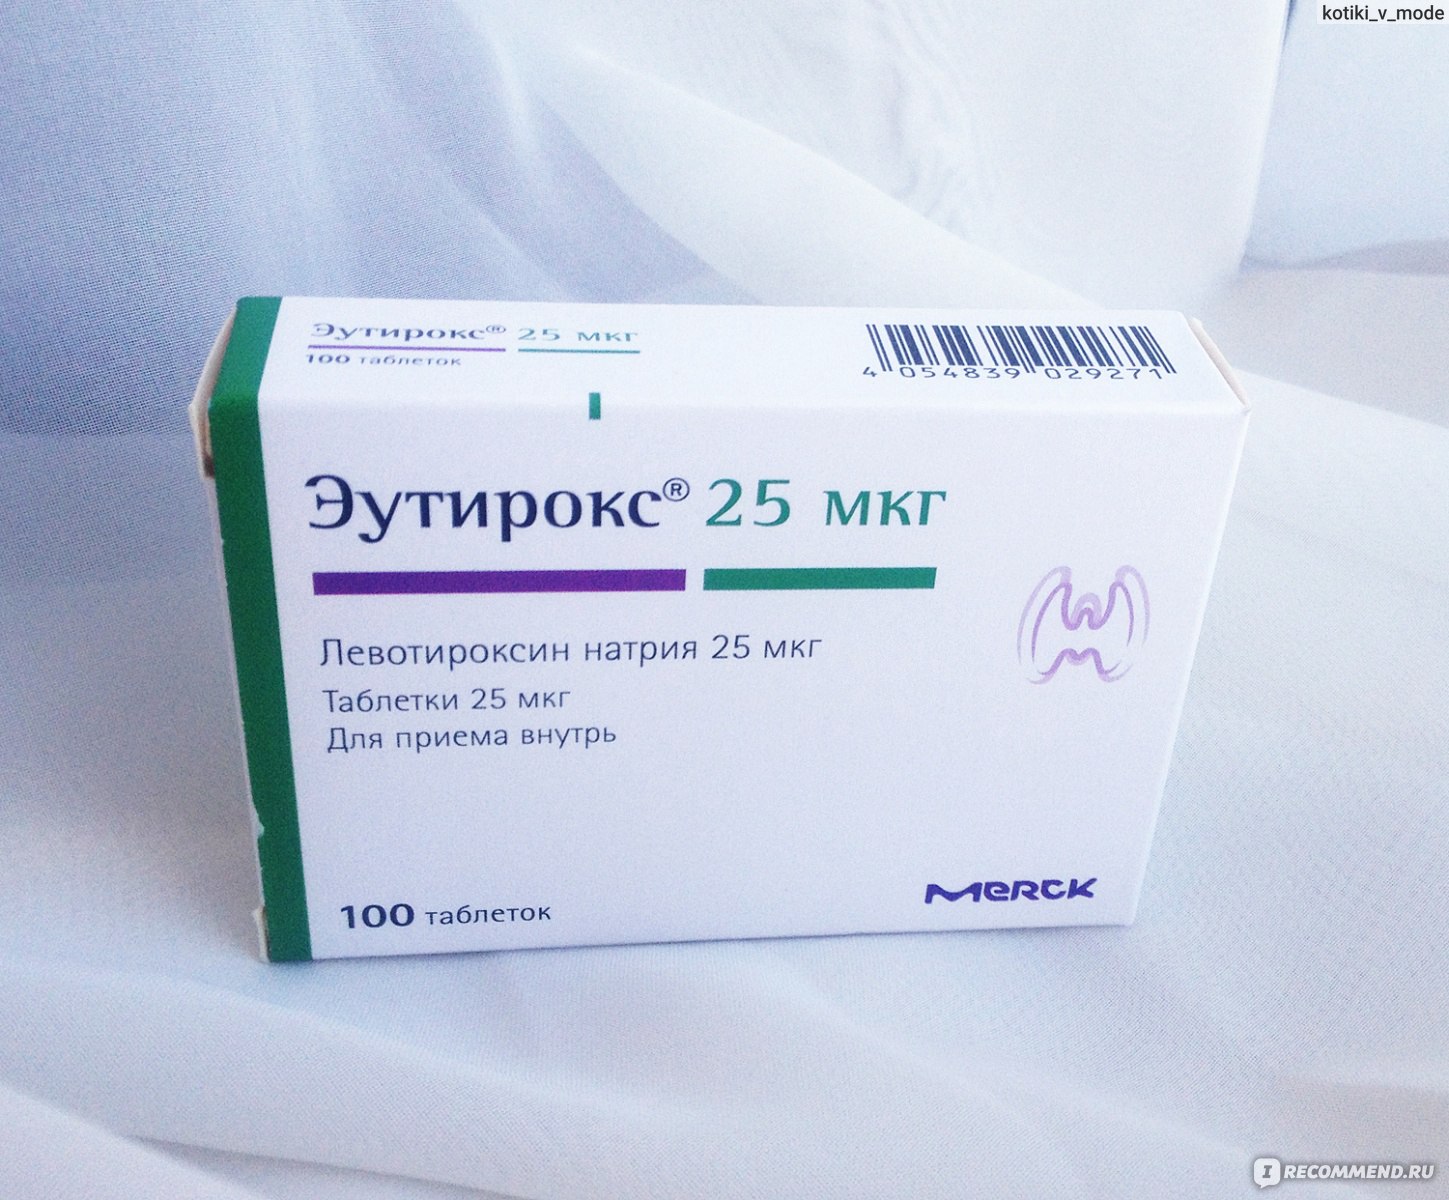 Levotiroxina para adelgazar